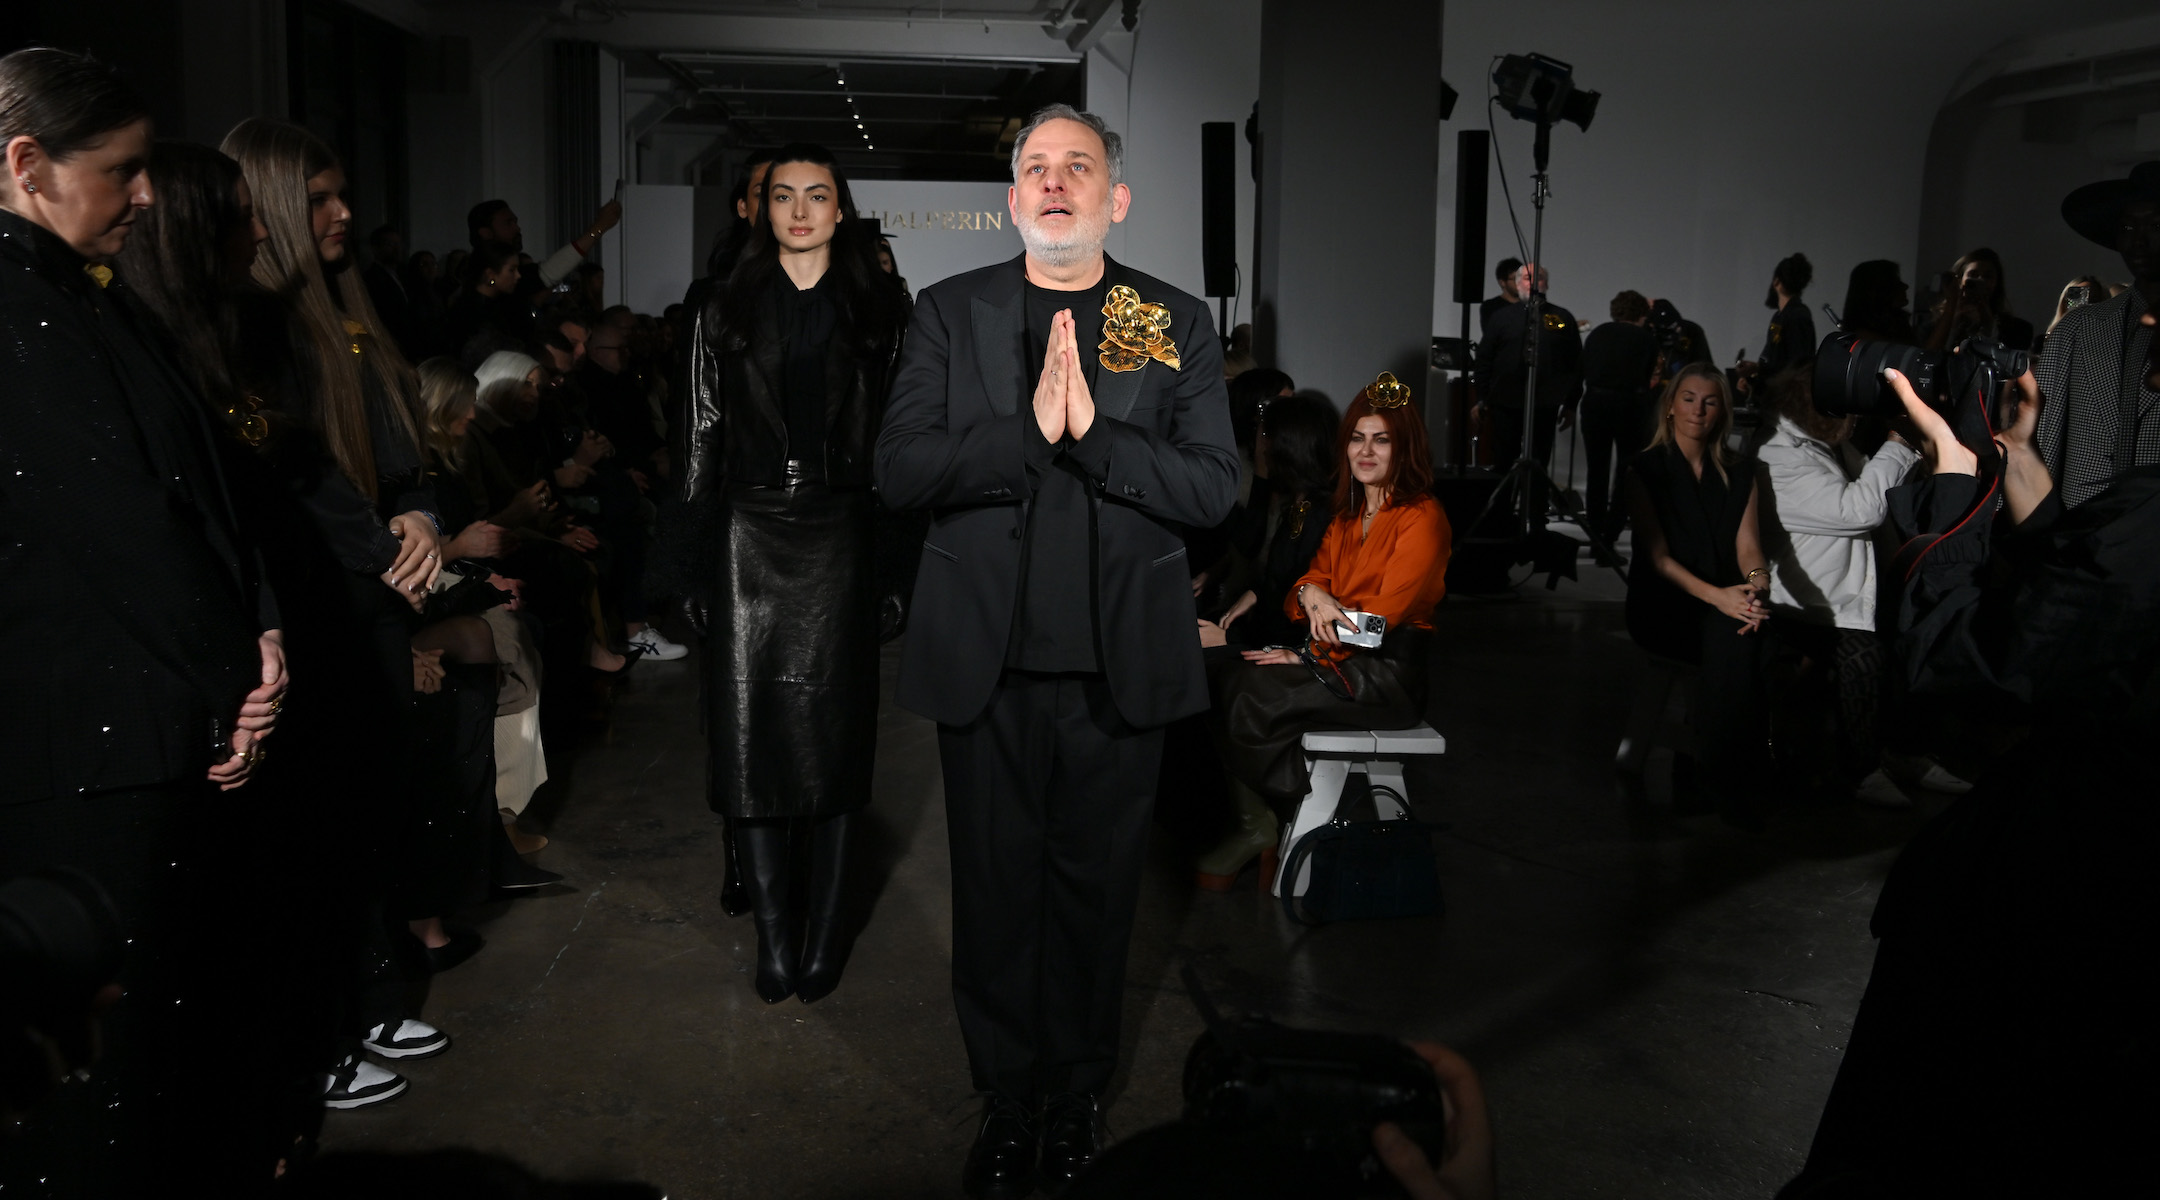 המעצב הישראלי הזה סגר את תצוגת שבוע האופנה שלו בניו יורק עם ההמנון הלאומי של ישראל